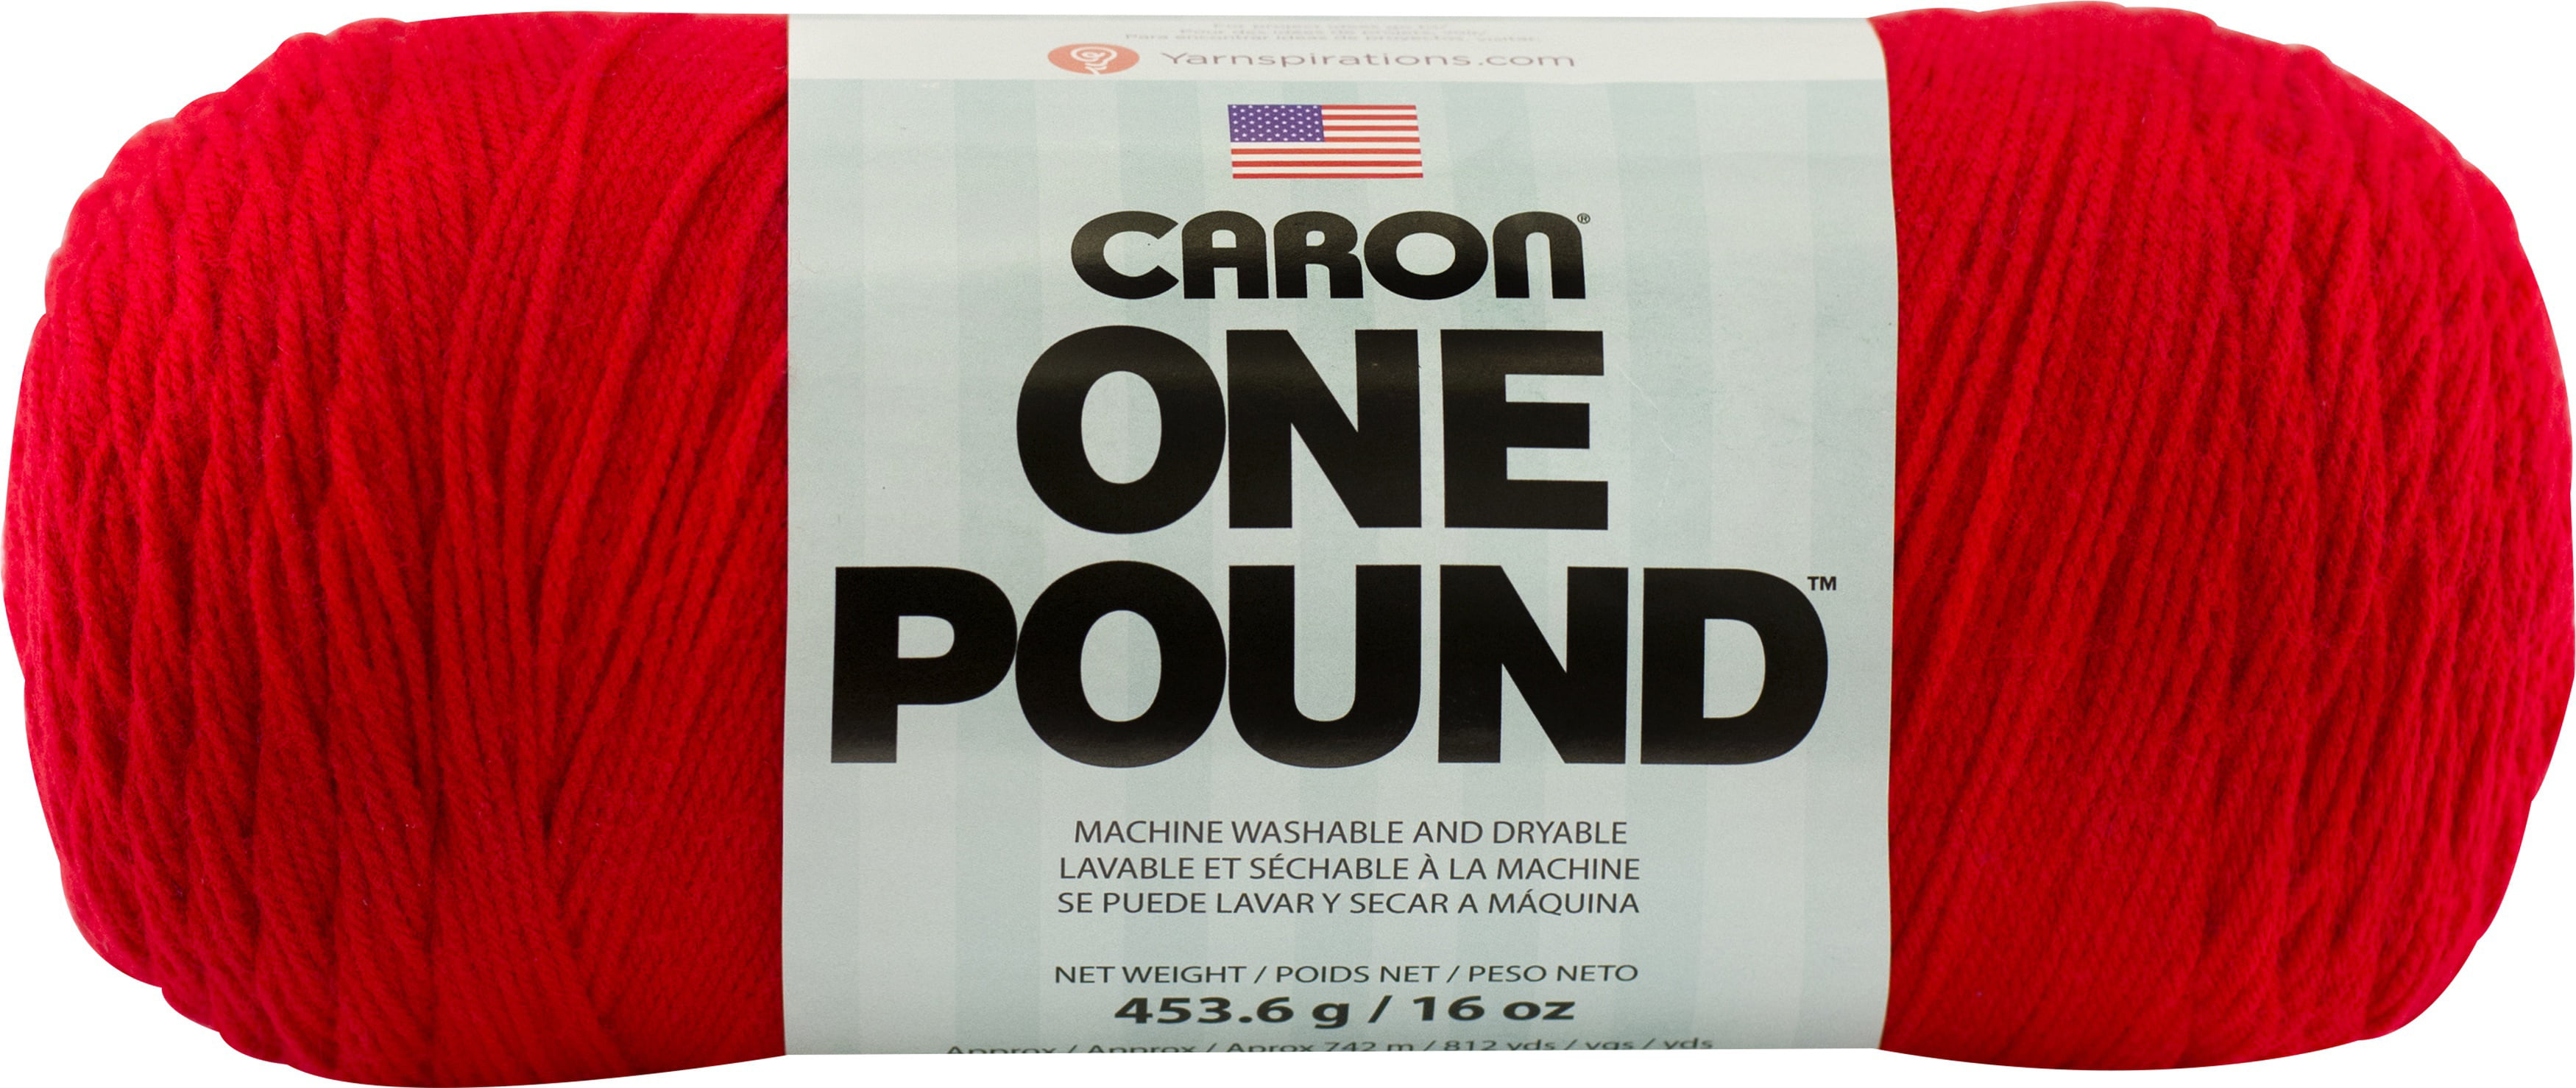 Caron One Pound Yarn - Canal - 20458180